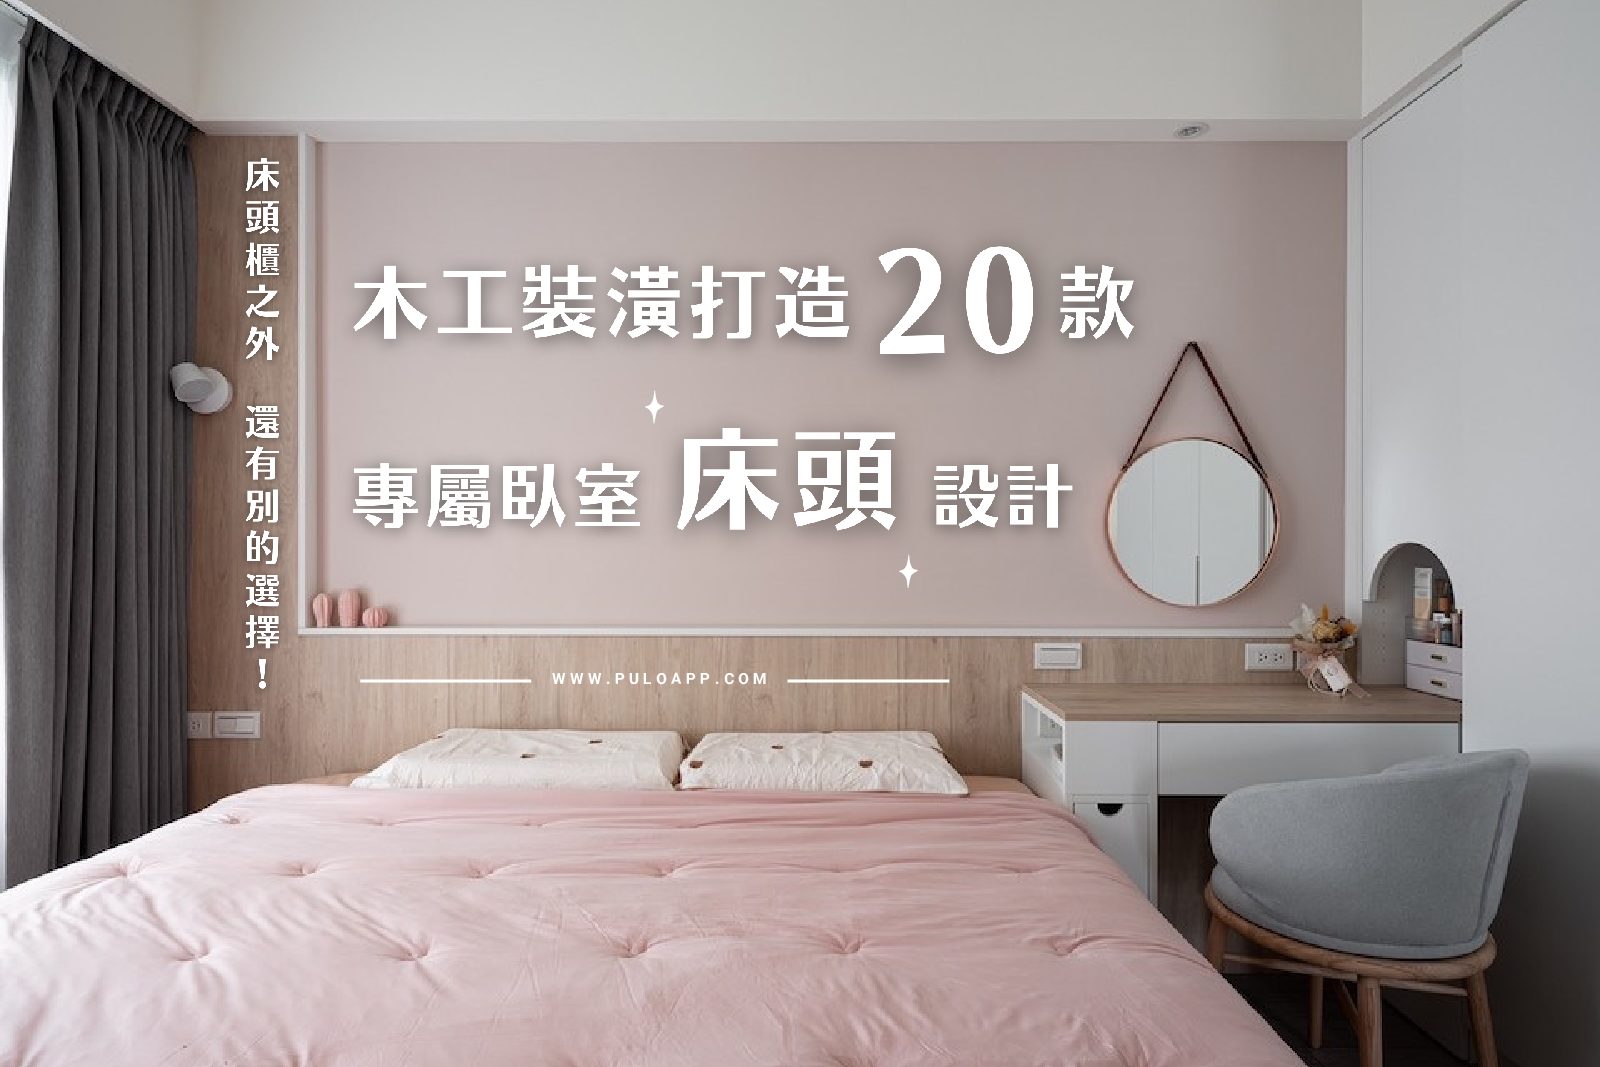 床頭櫃之外還有別的選擇！20種木工裝潢打造專屬臥室床頭設計